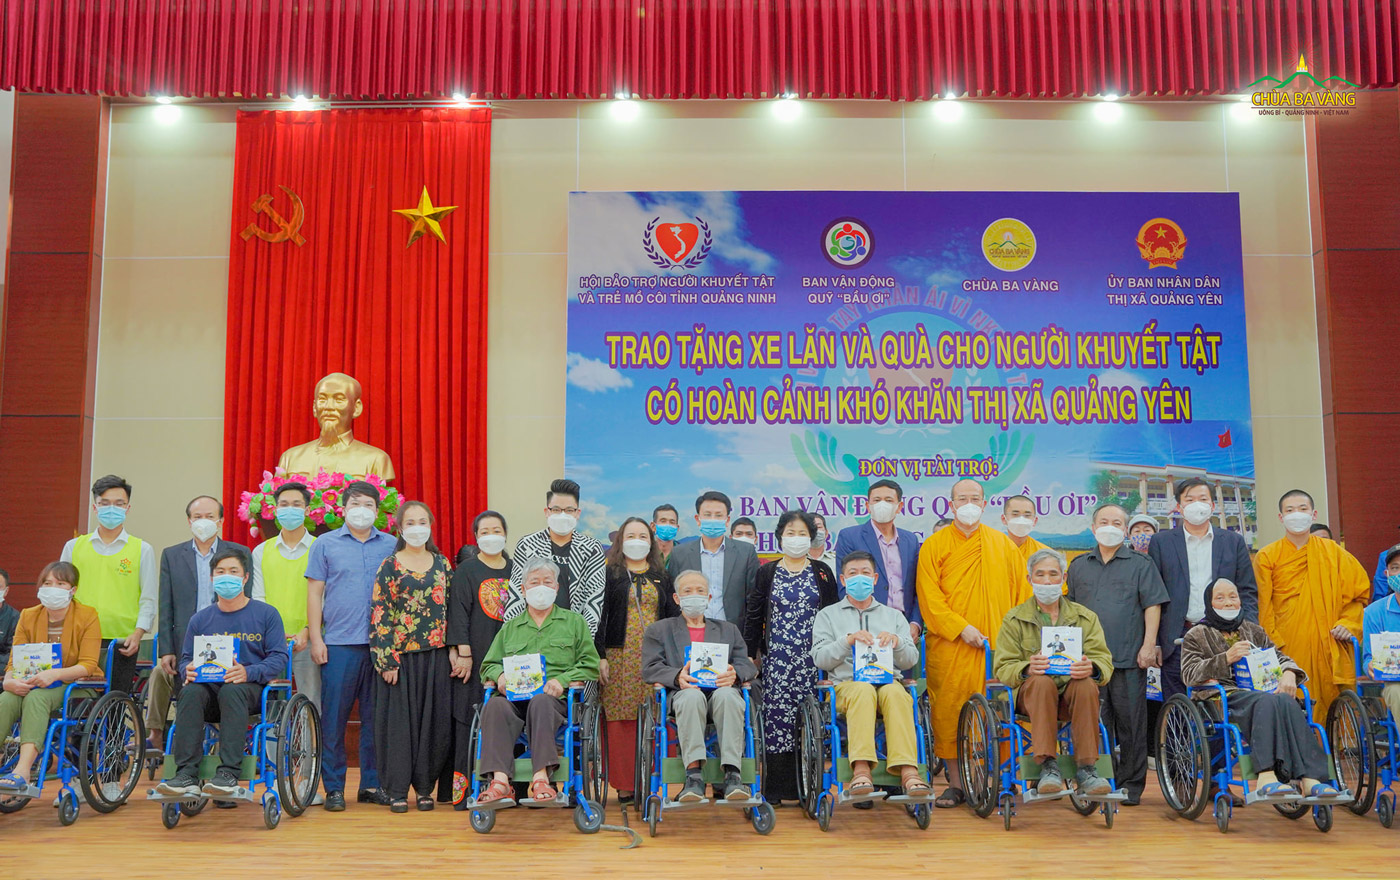 Trong buổi chiều cùng ngày, tại thị xã Quảng Yên, phần quà trị giá hơn 160 triệu đồng được trao tới những người khuyết tật có hoàn cảnh khó khăn.